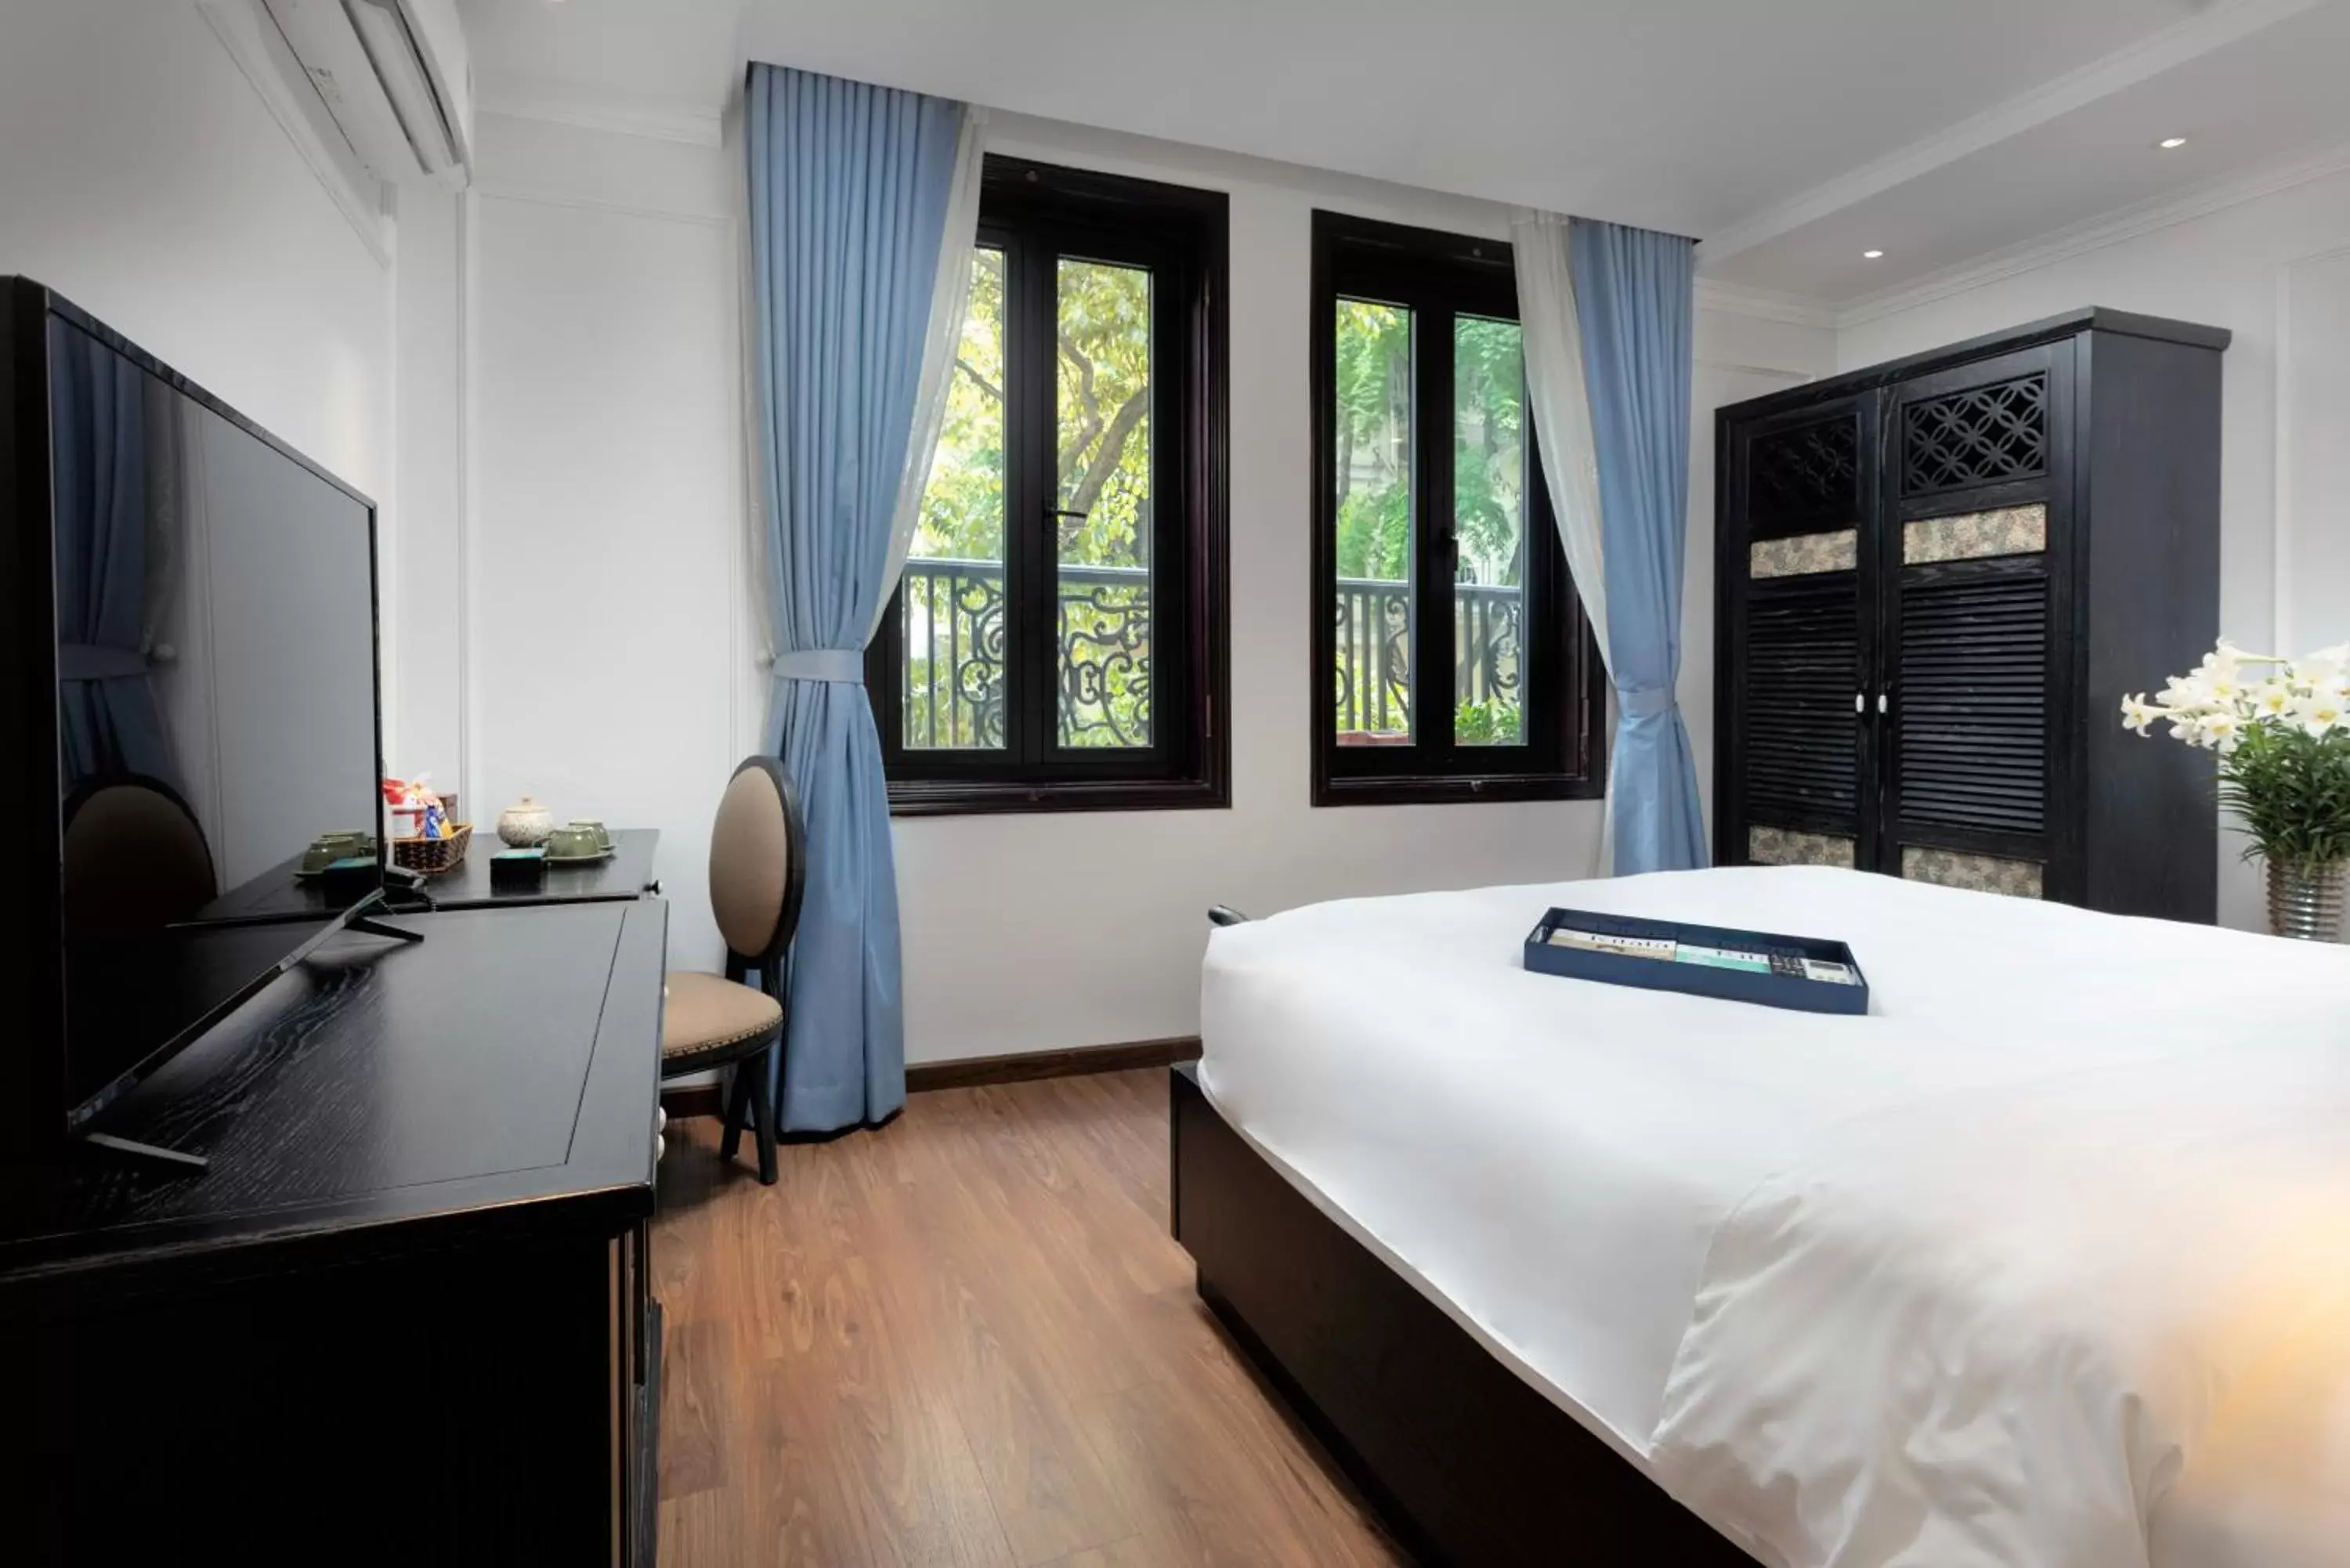 Bed in Hanoi Media Hotel & Spa